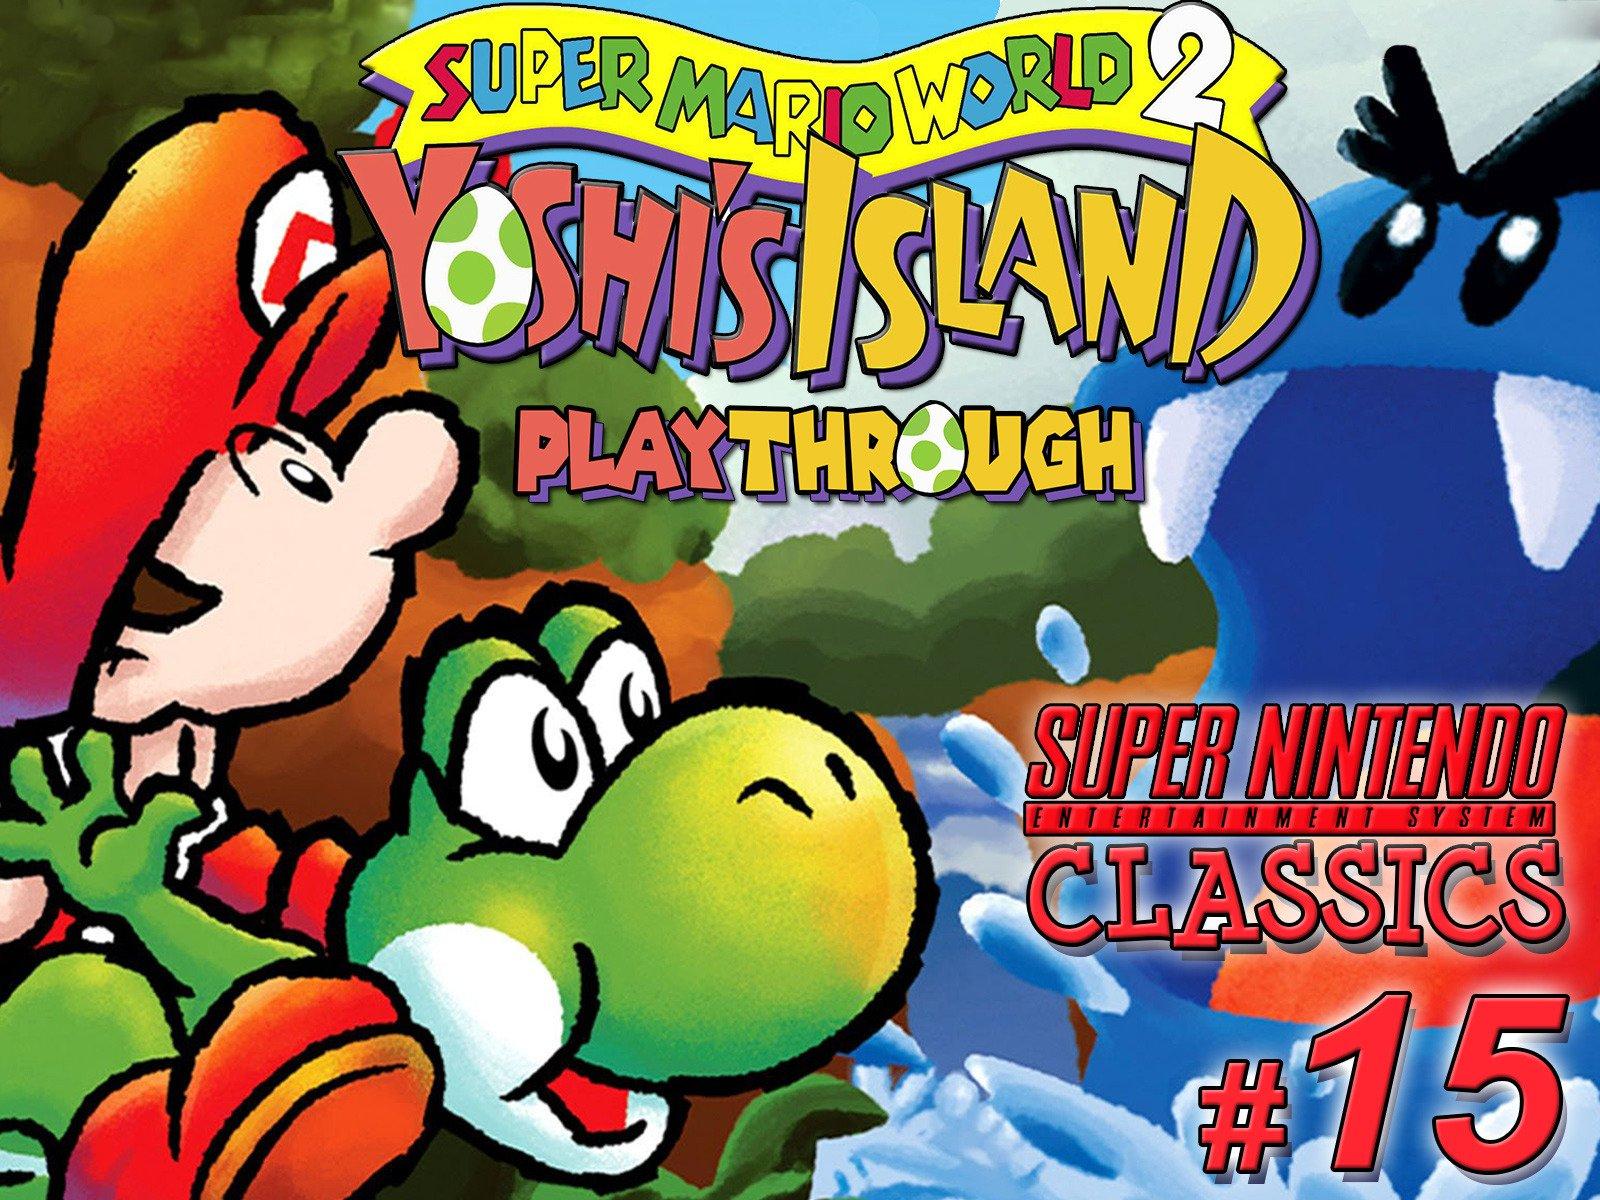 Mario yoshi island. Super Mario World 2 - Yoshi's Island Snes. Super Mario World 2 Yoshis Island. Super Mario World 2 Yoshi's Island Snes обложка.